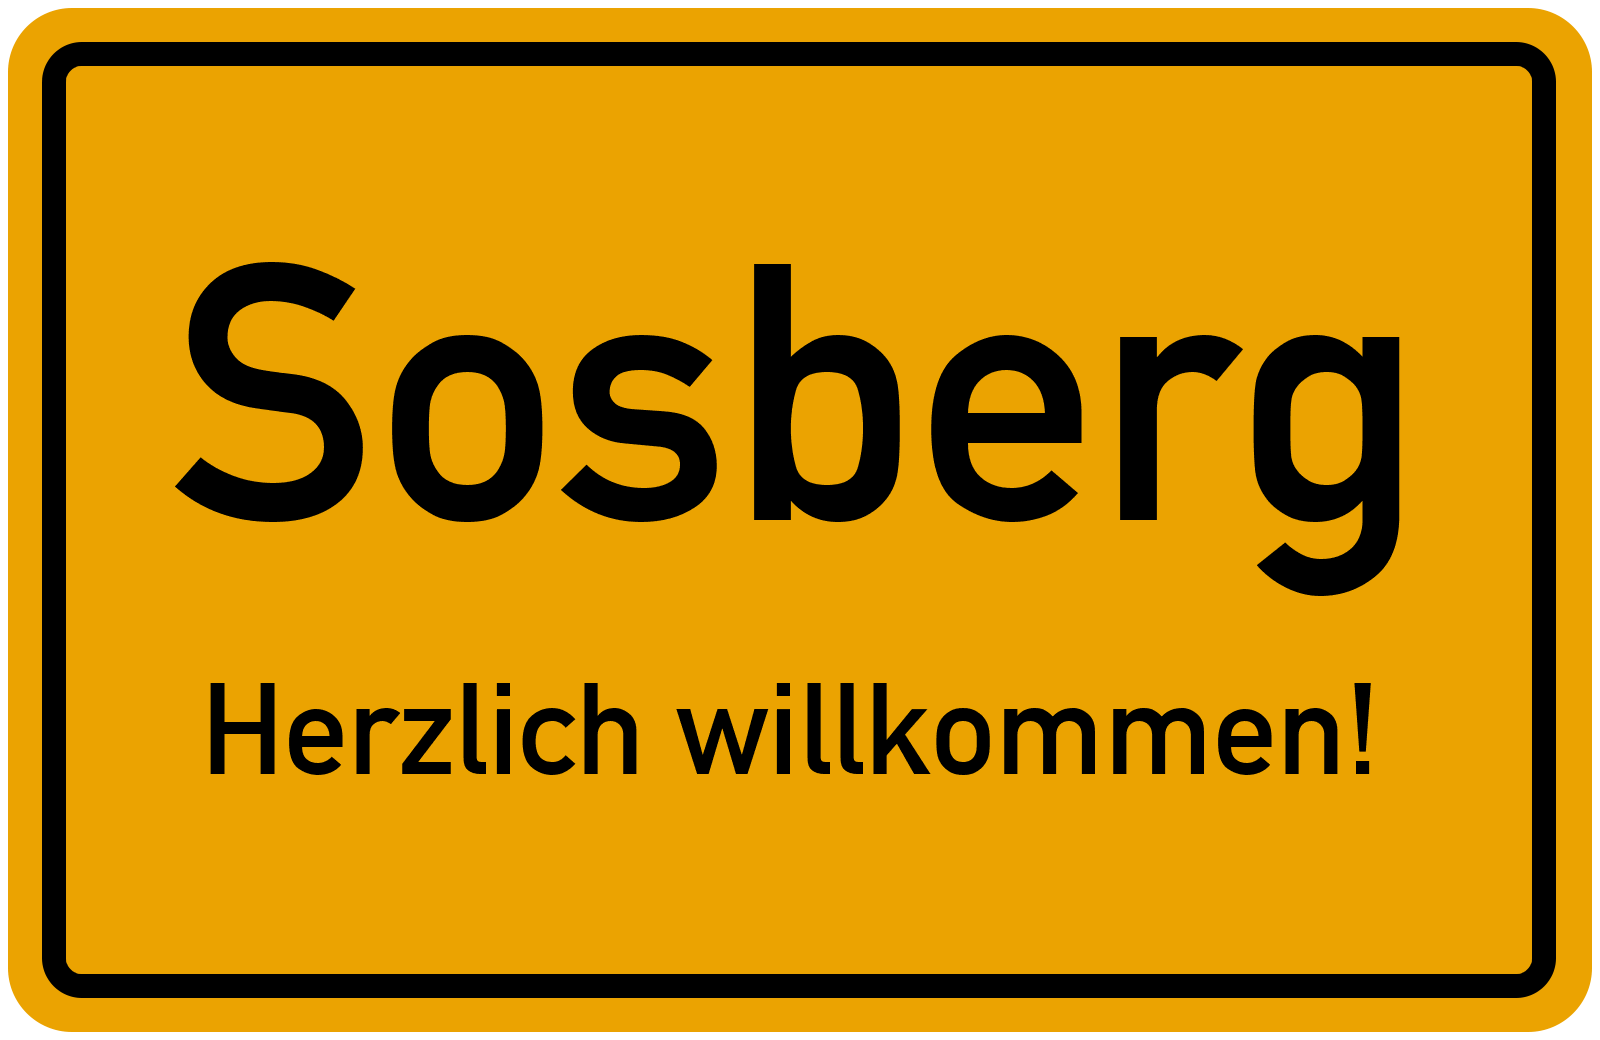 Sosberg - Herzlich willkommen!